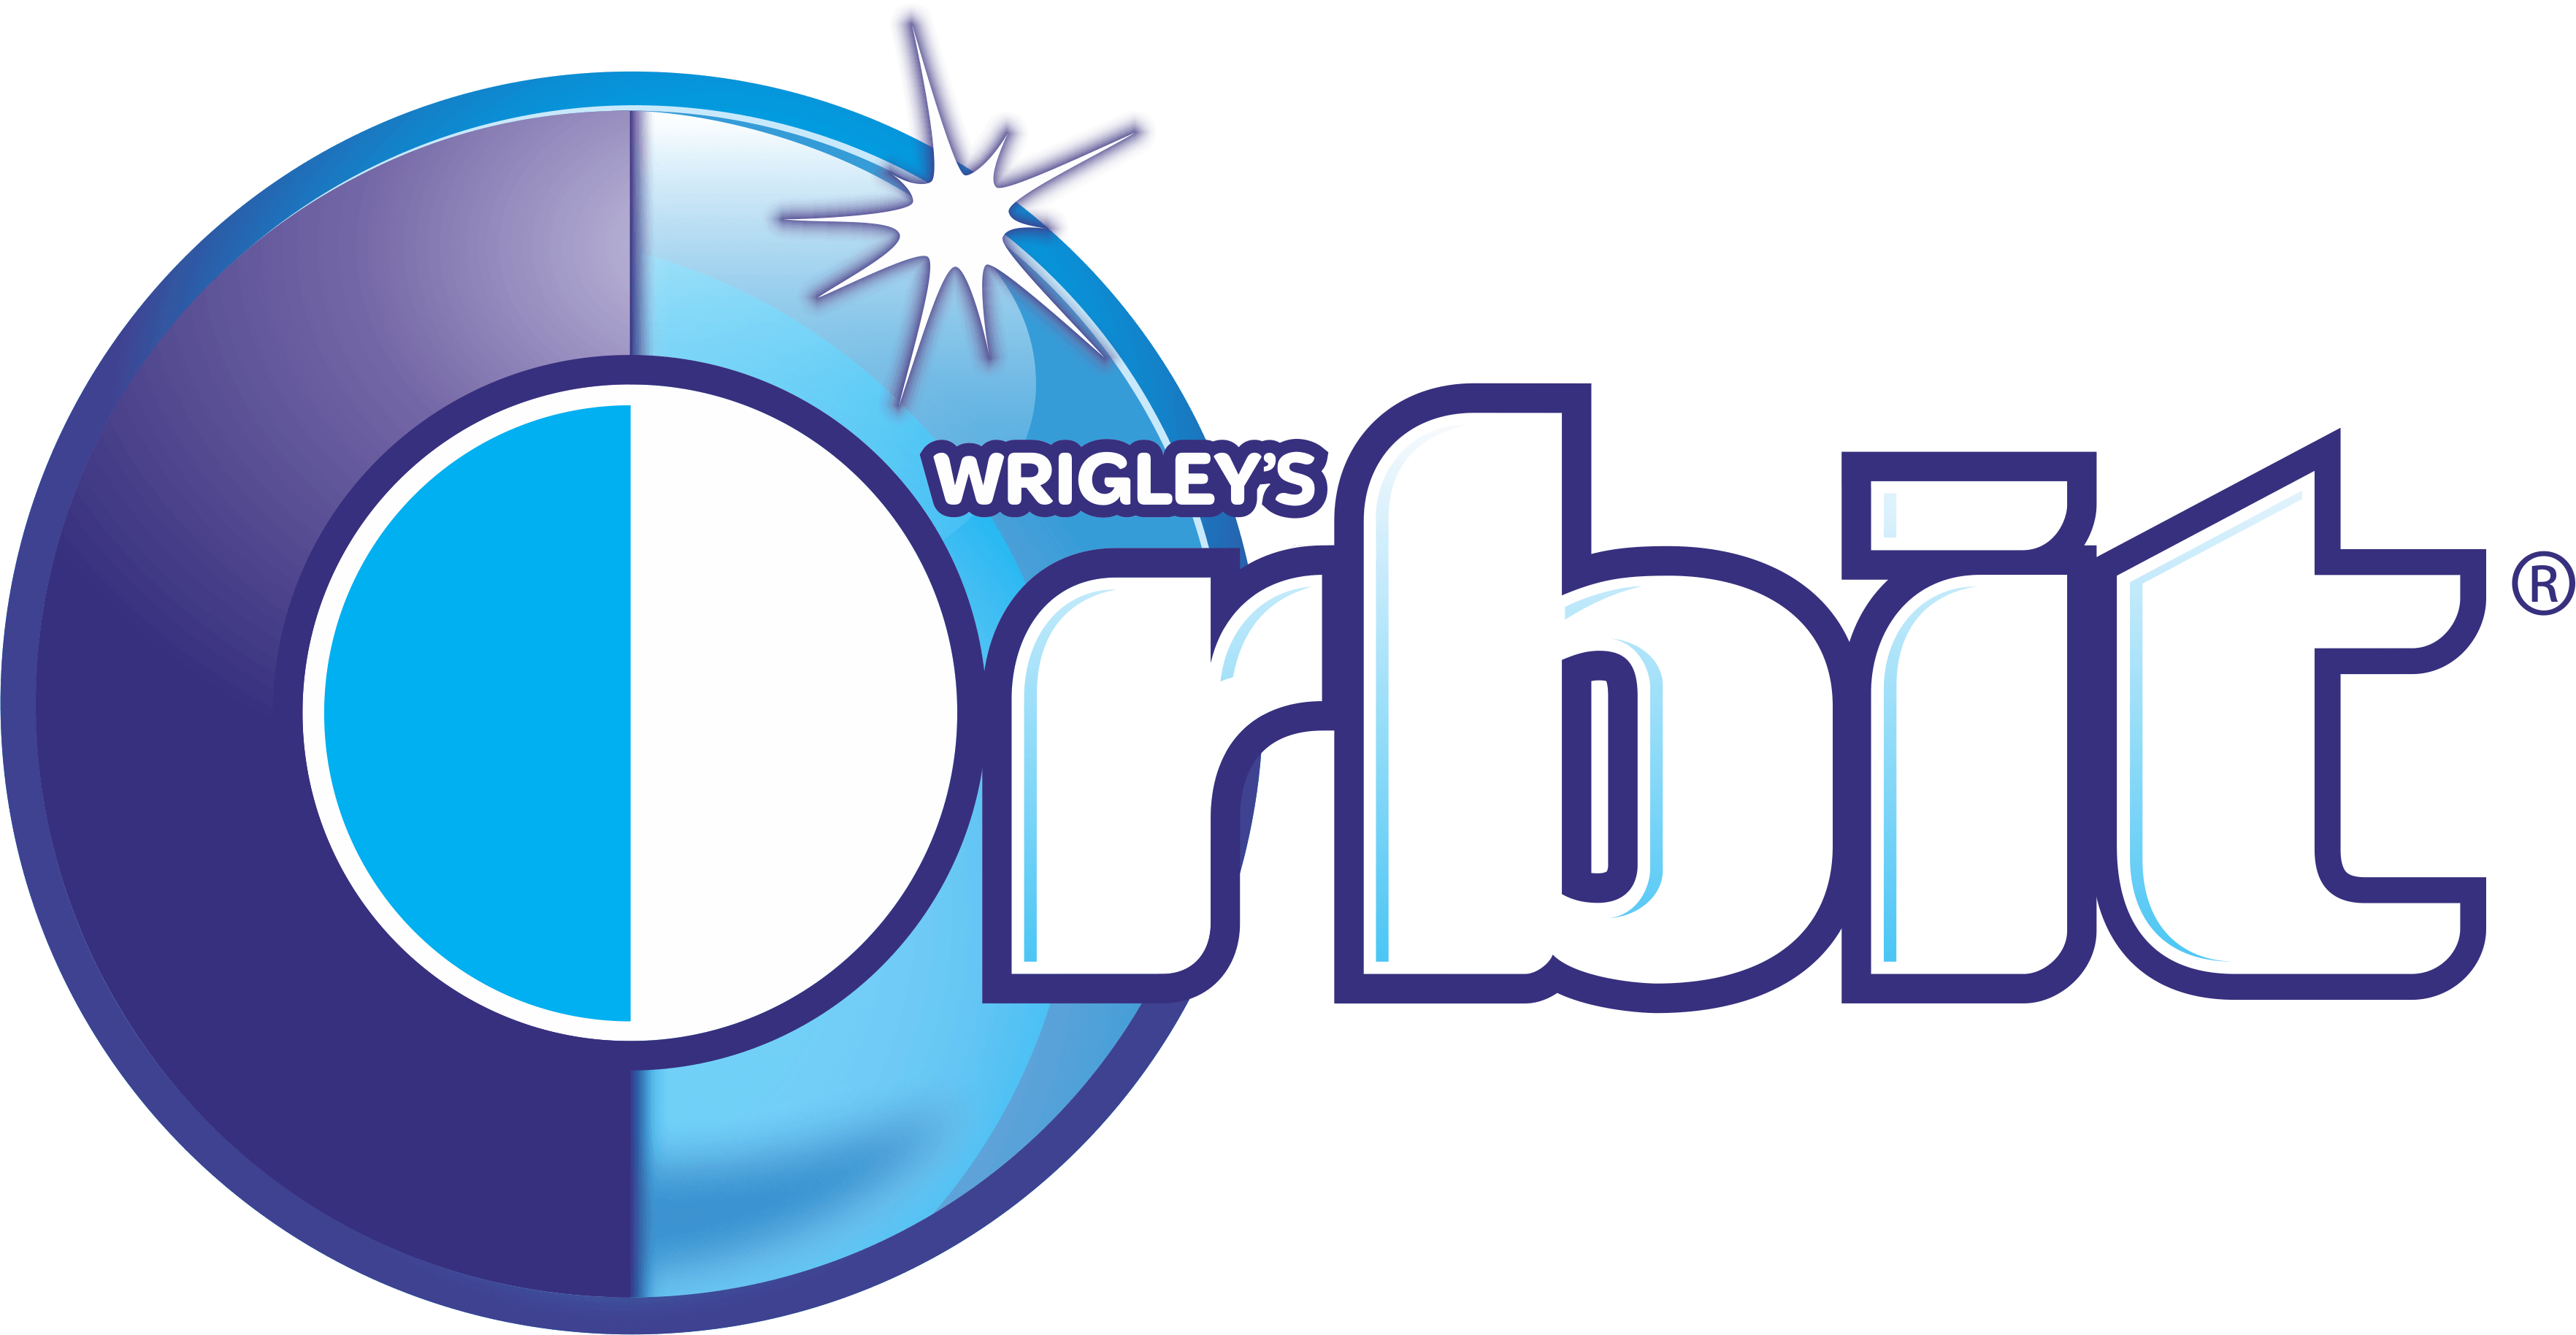 Orbit Logo - Orbit